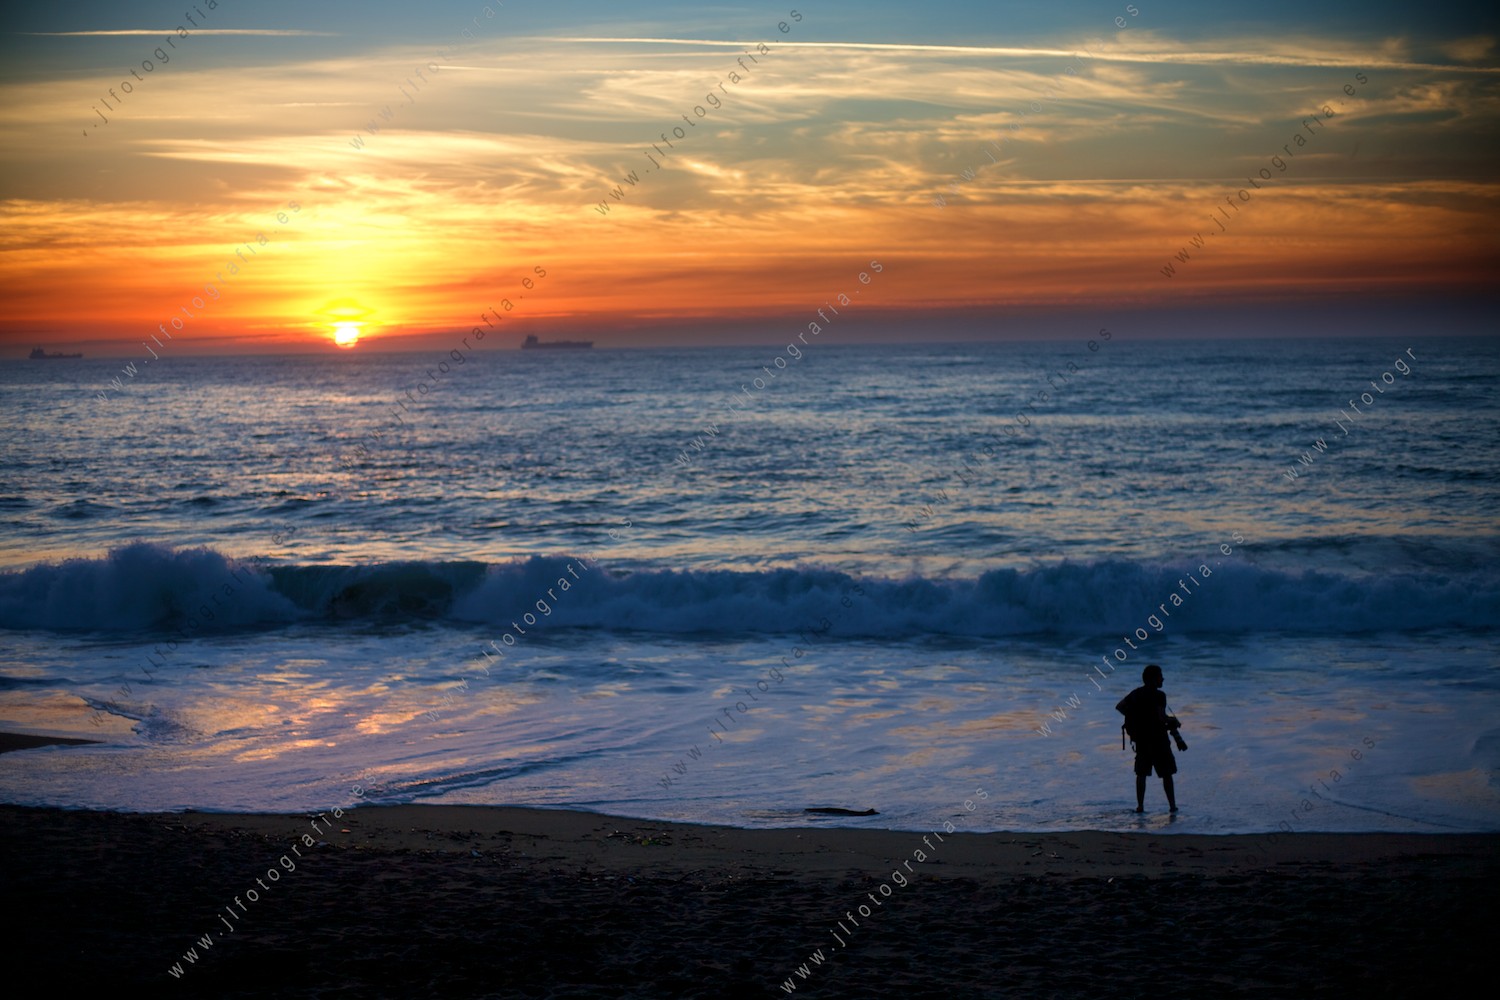 Fotógrafo, durante la puesta de sol, buscando su encuadre más fotogénico